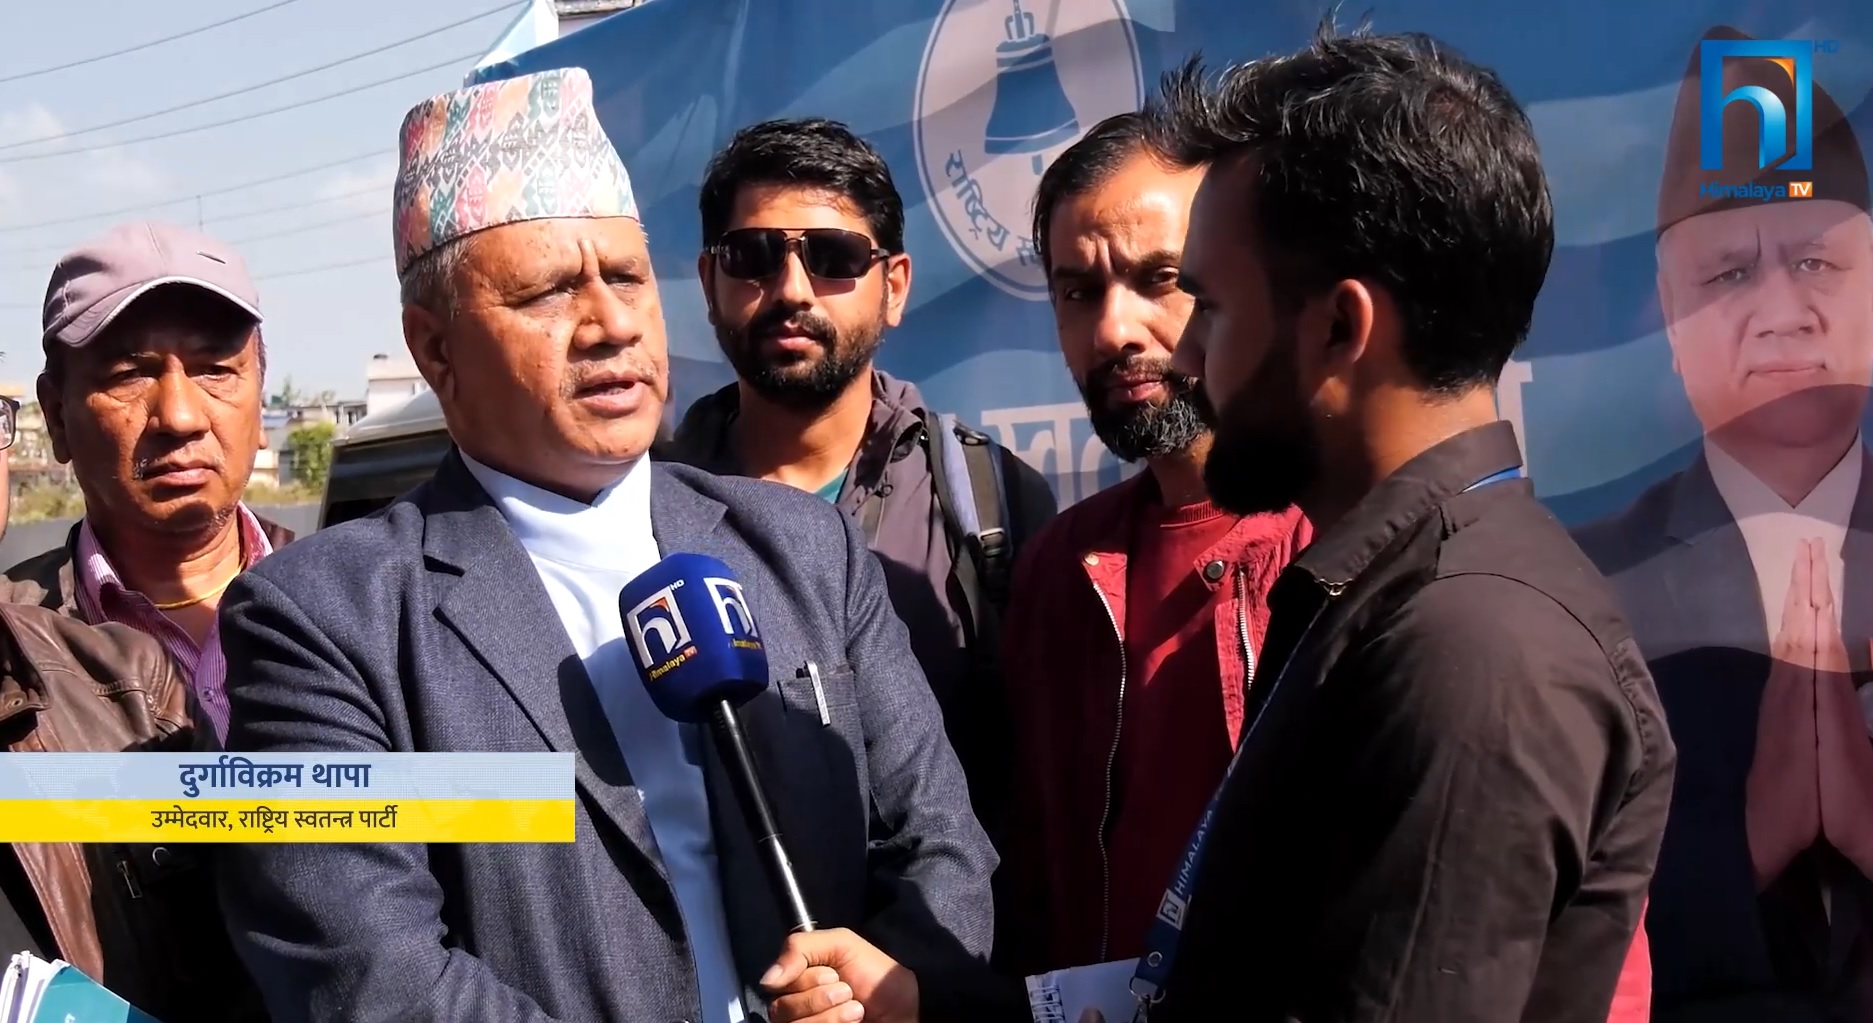 काठमाडौं ३ को चुनावी भिडन्त: यस्तो छ मतदाताको अपेक्षा र उम्मेदवारका आश्वासन (भिडियो रिपोर्टसहित)